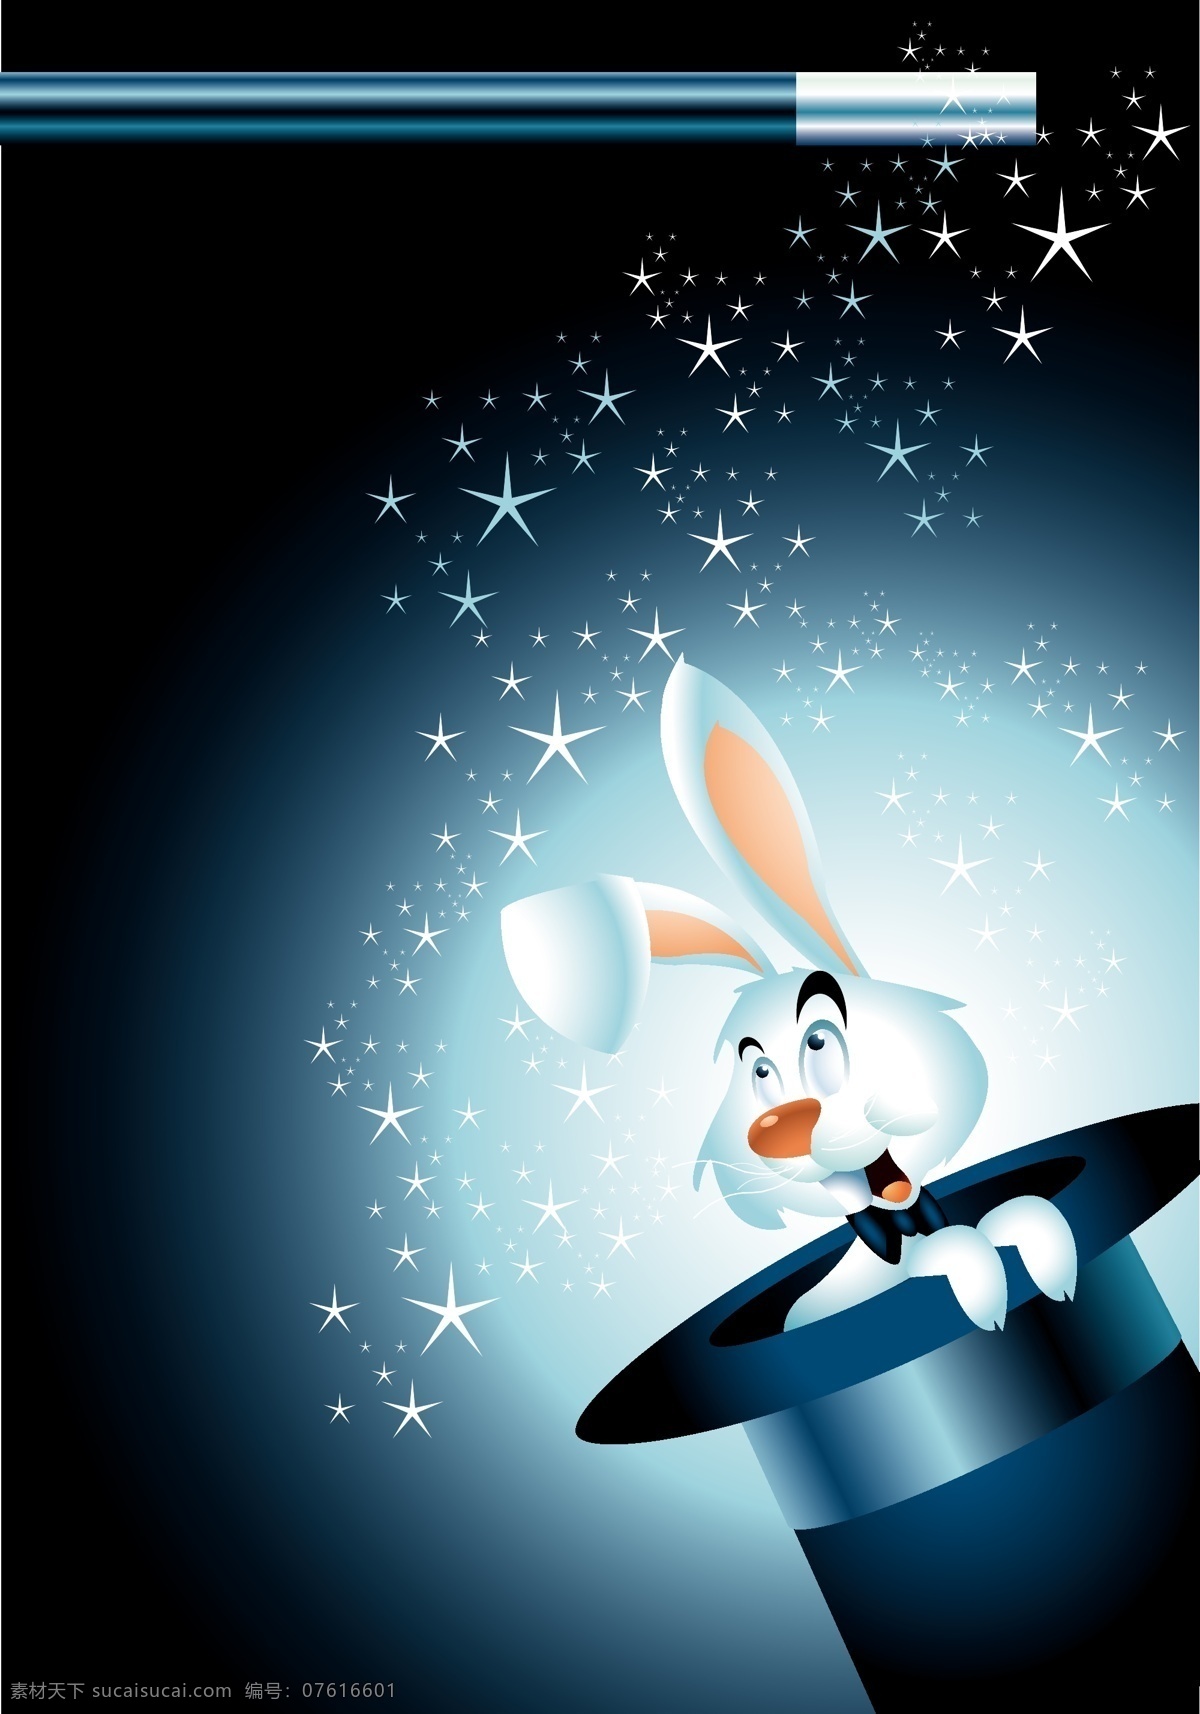 魔术 帽 中 兔 宝宝 魔术帽 表演 兔宝宝 兔子 星星 发光 文化艺术 影视娱乐 矢量图库